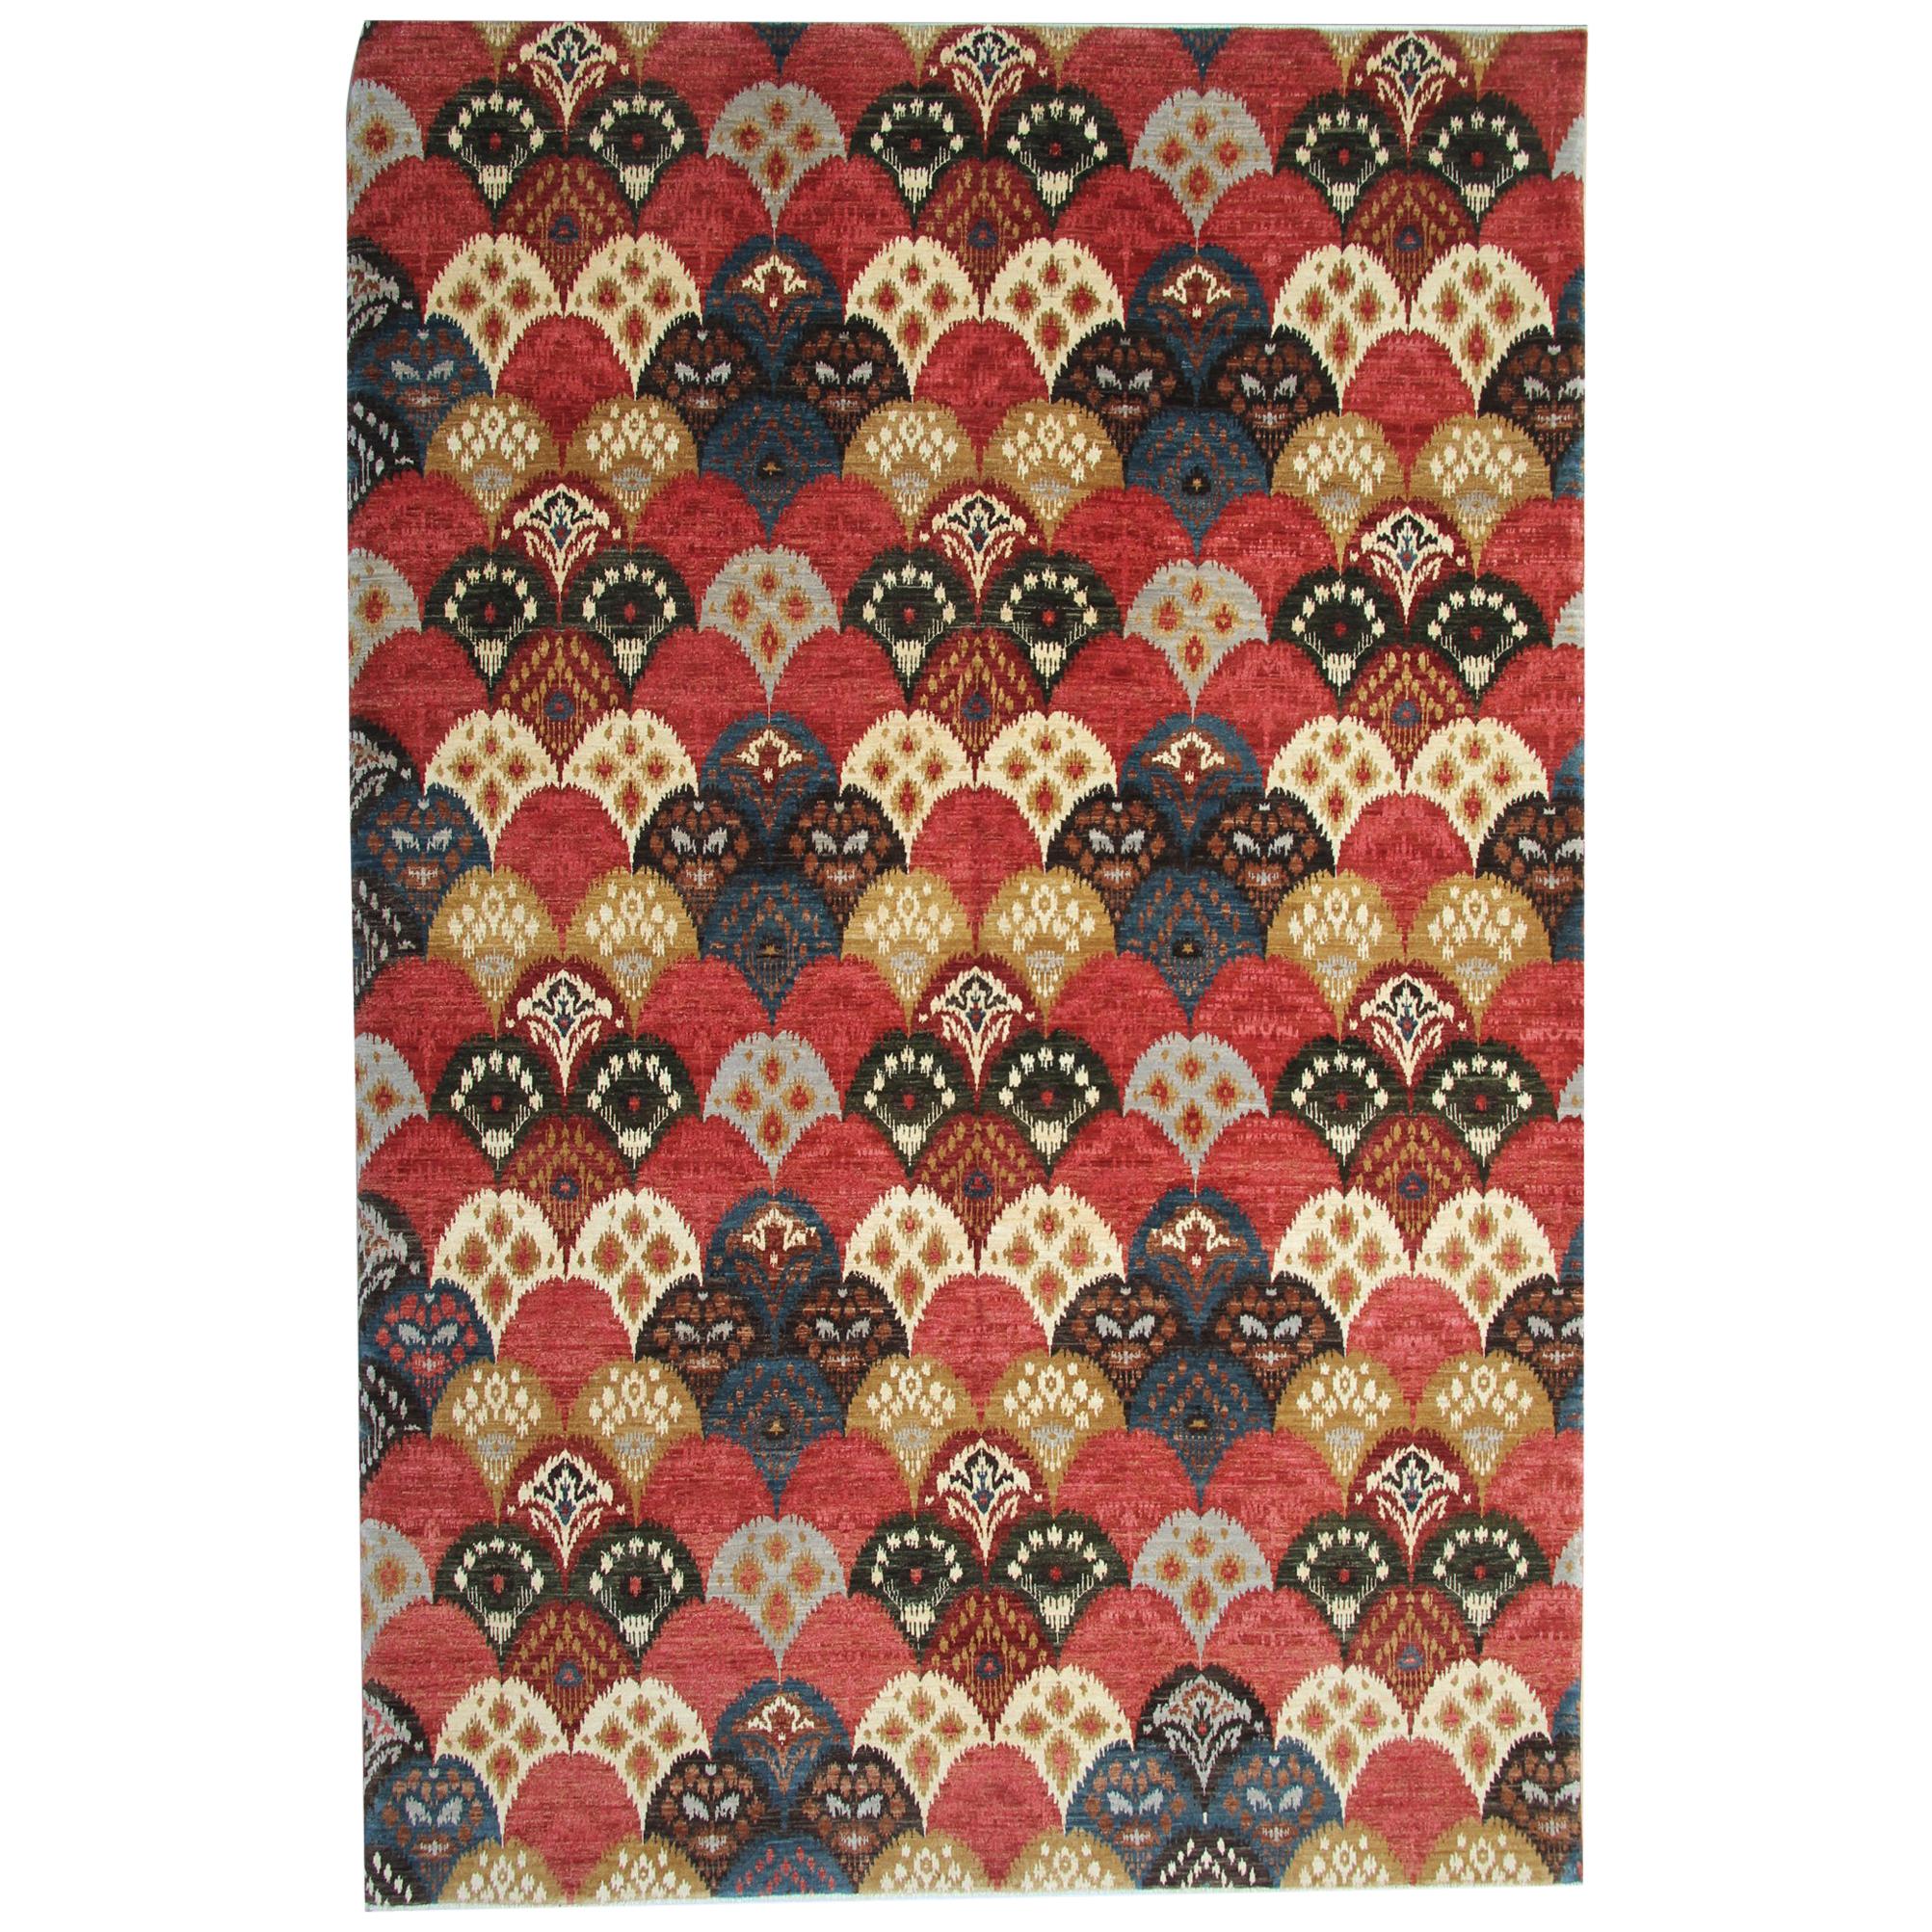 Handgefertigter orientalischer Teppich, moderner orientalischer Teppich, All-Over-Design